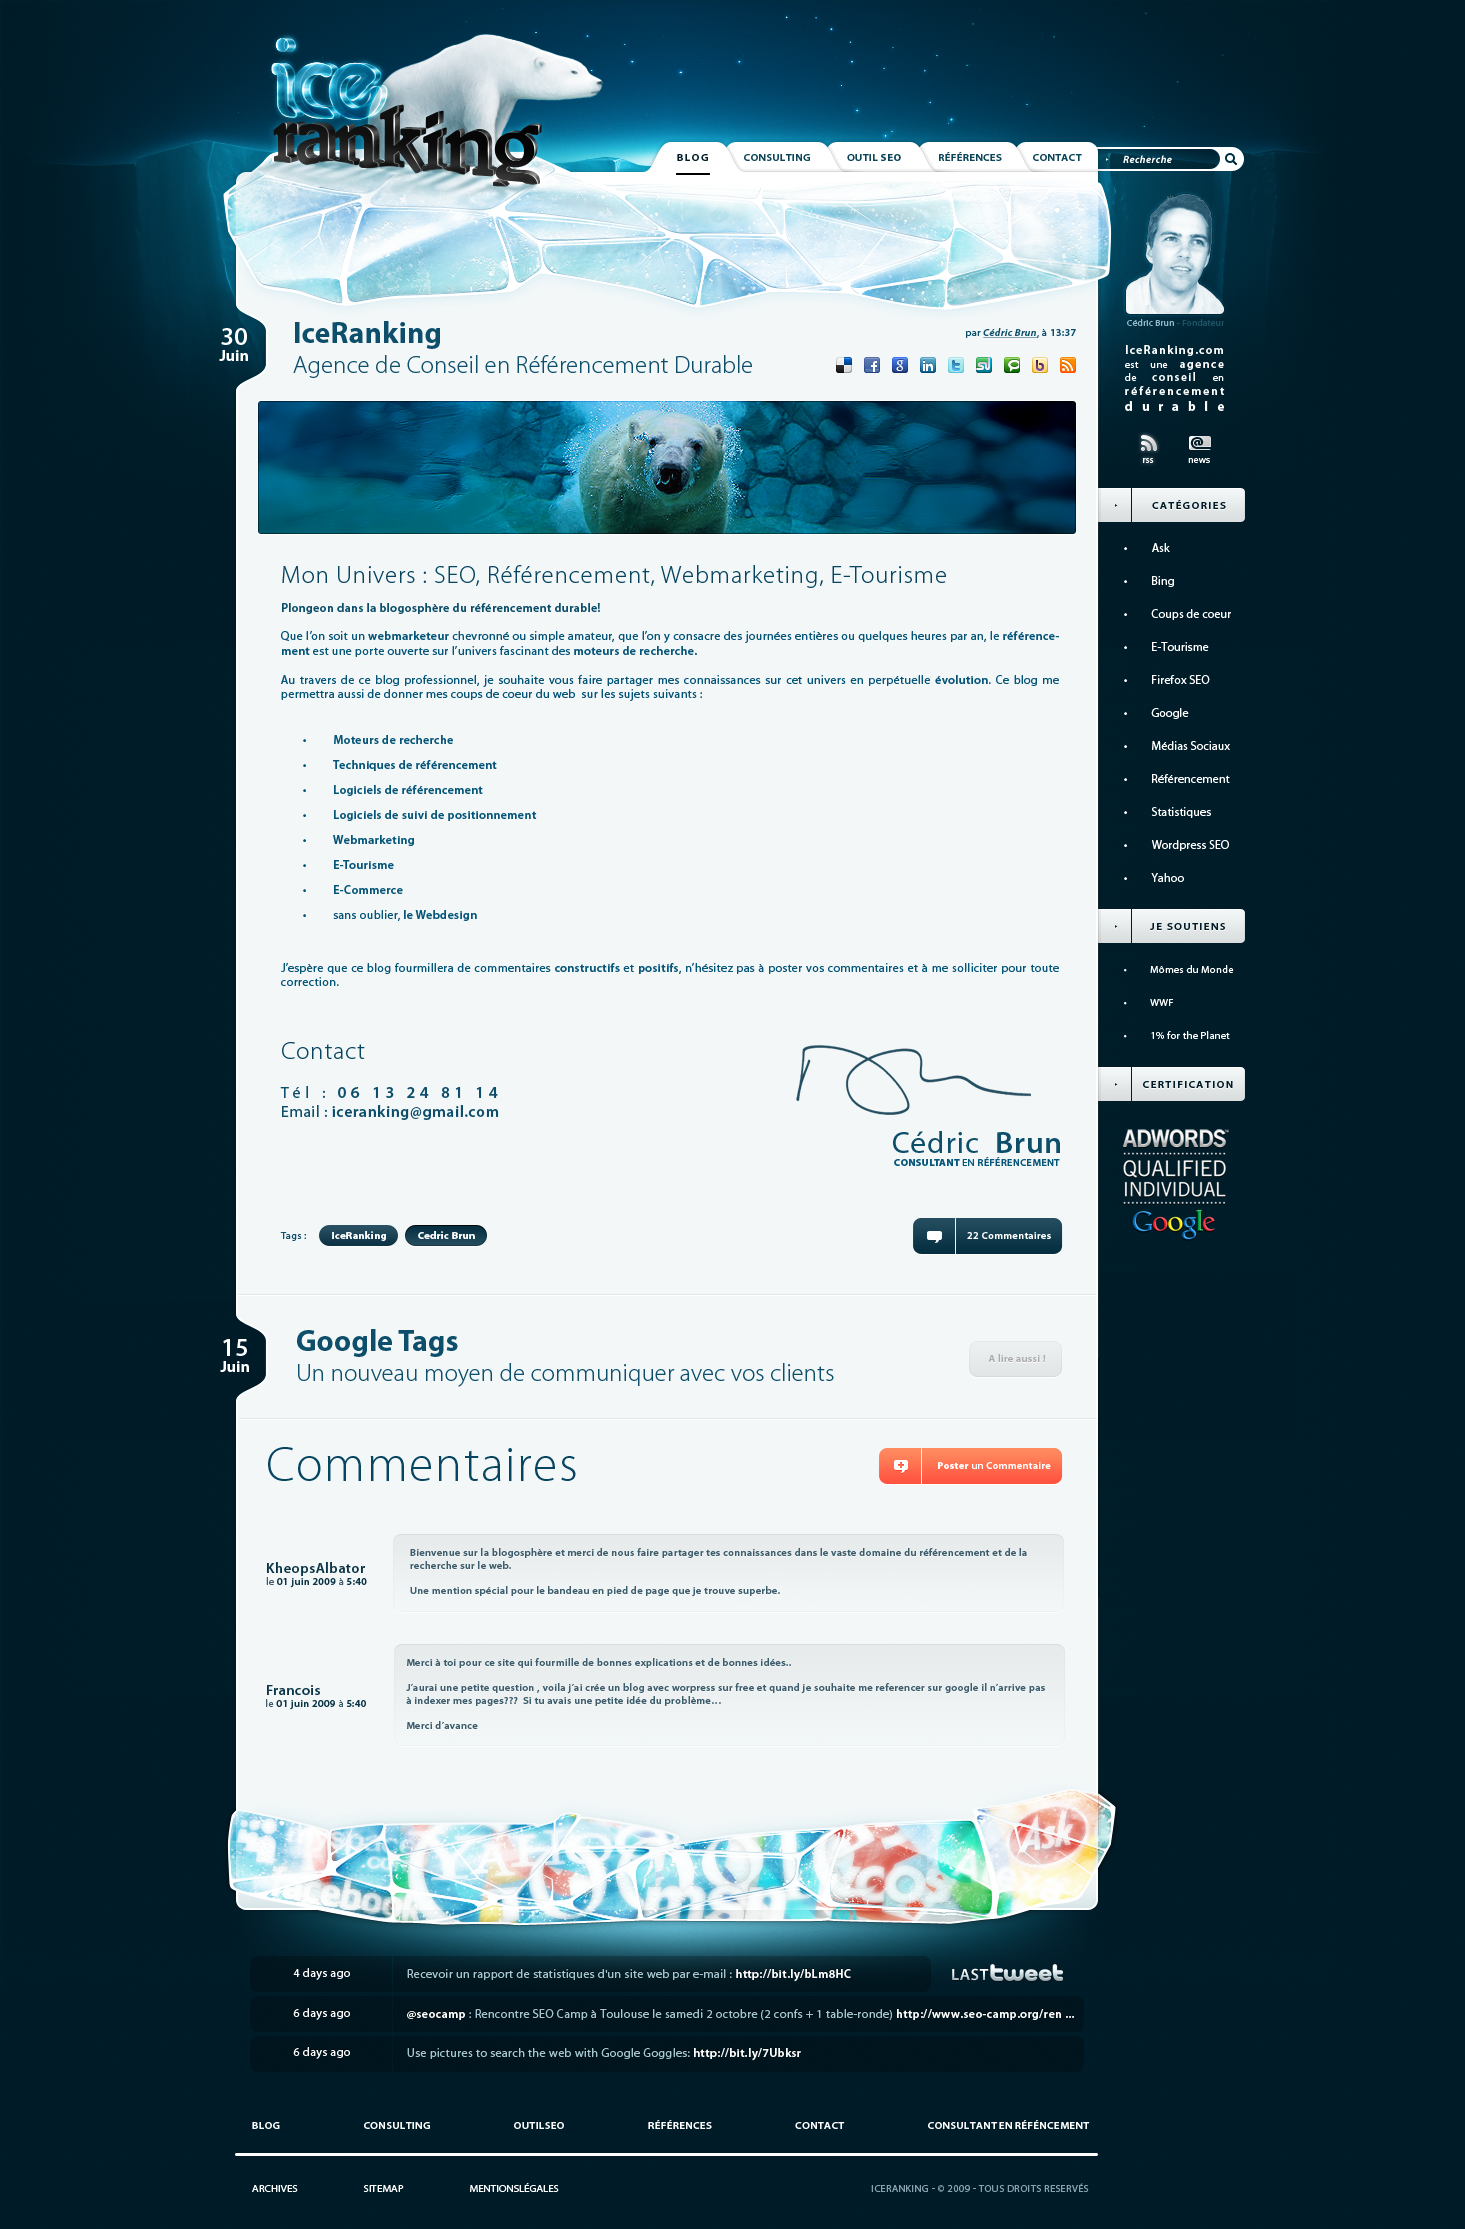 Antarctic Website